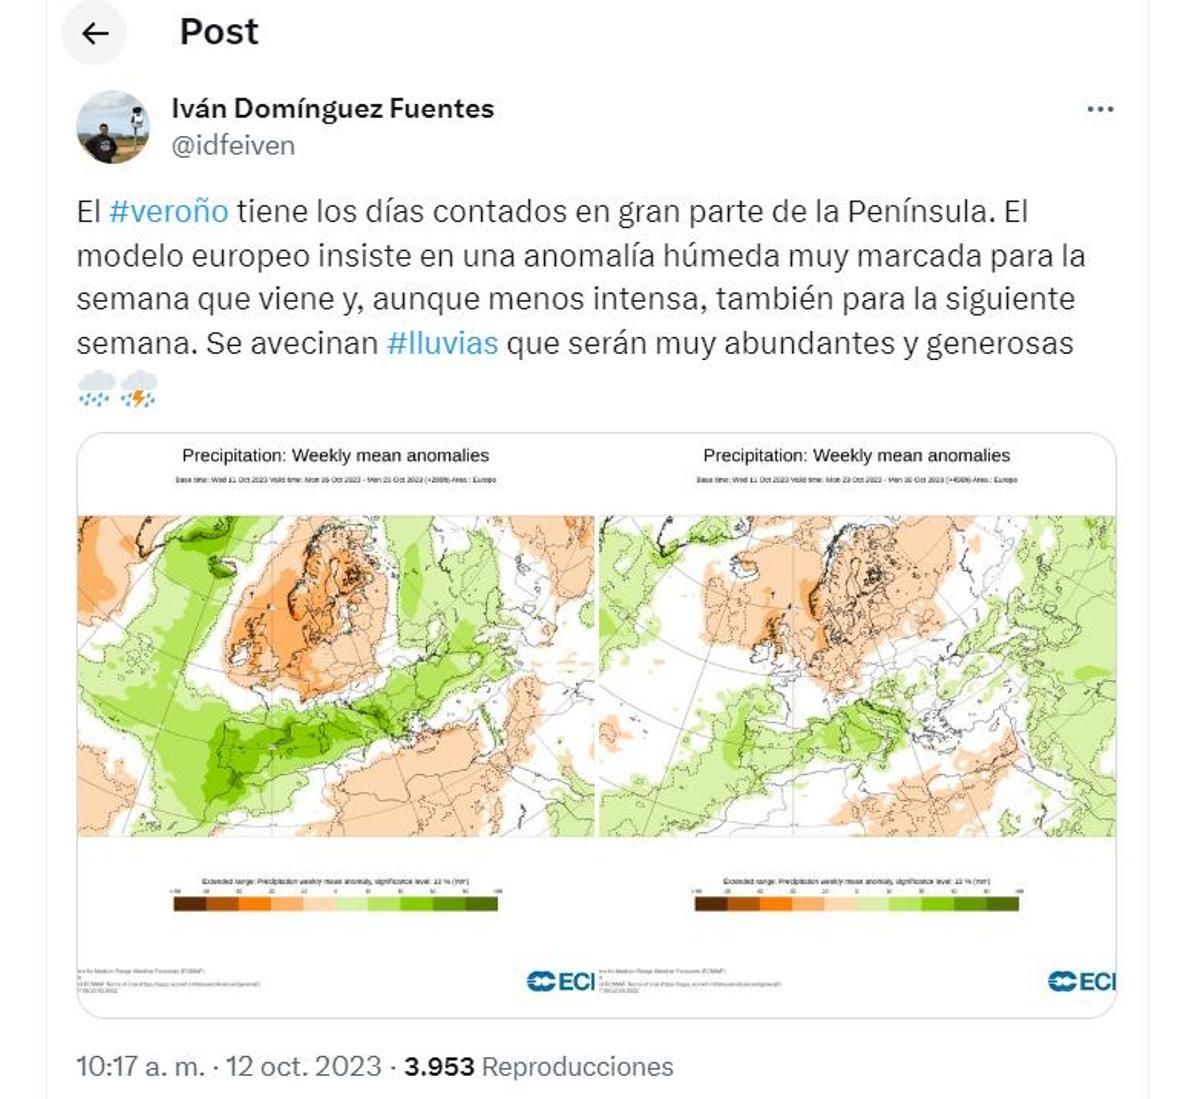 Tuit meteorológico del meteorólogo Iván Domínguez